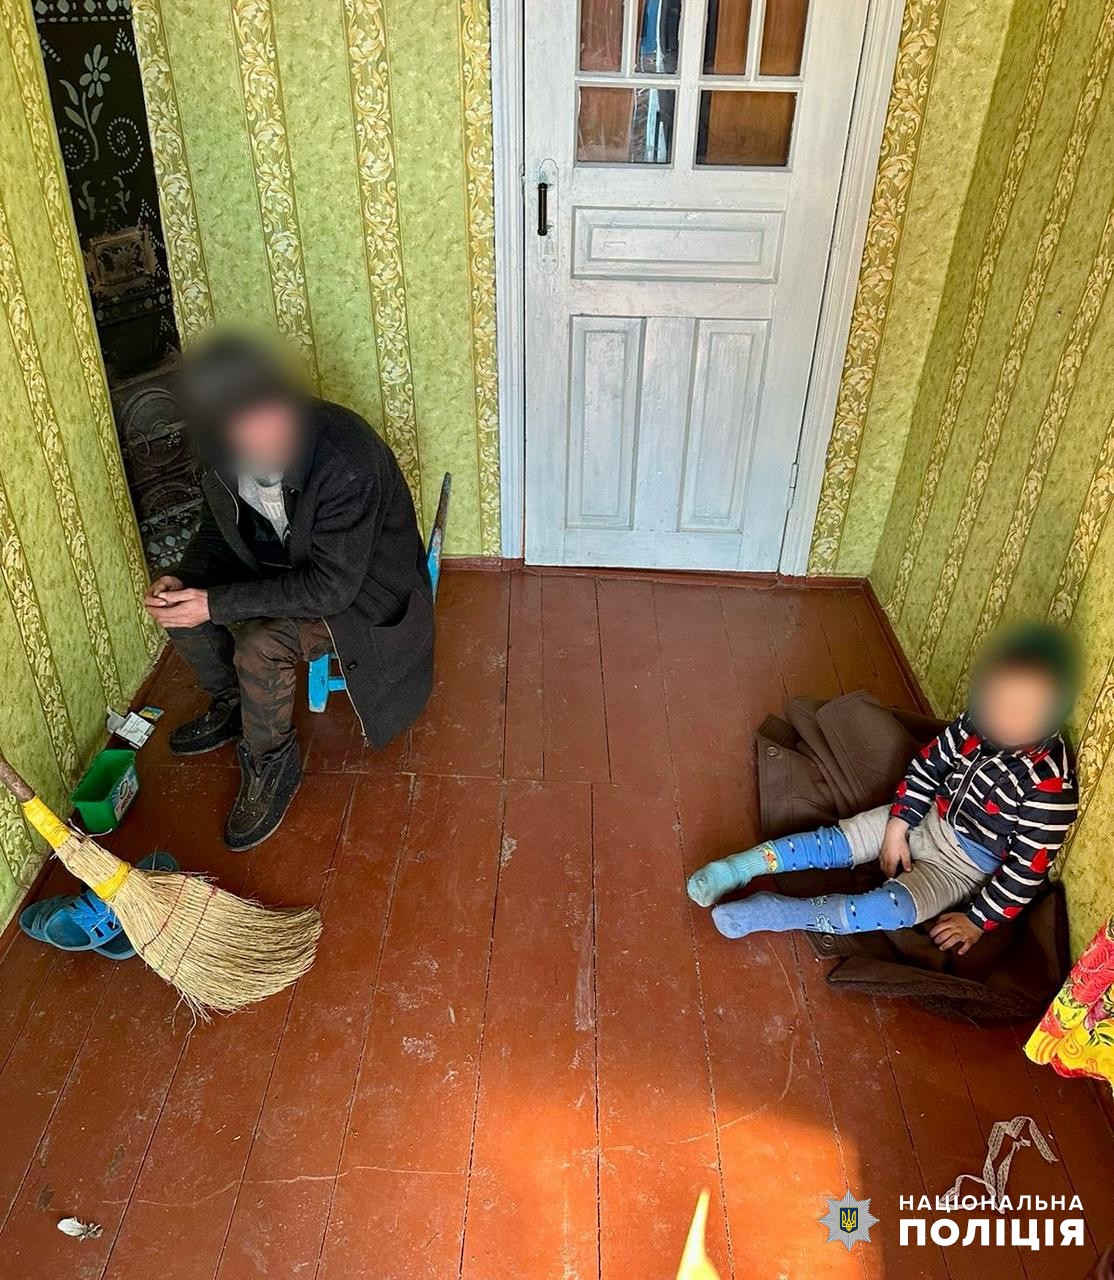 Антисанитария, голод и преступное нарушение родительских обязанностей: в Болградском районе проверили неблагополучные семьи